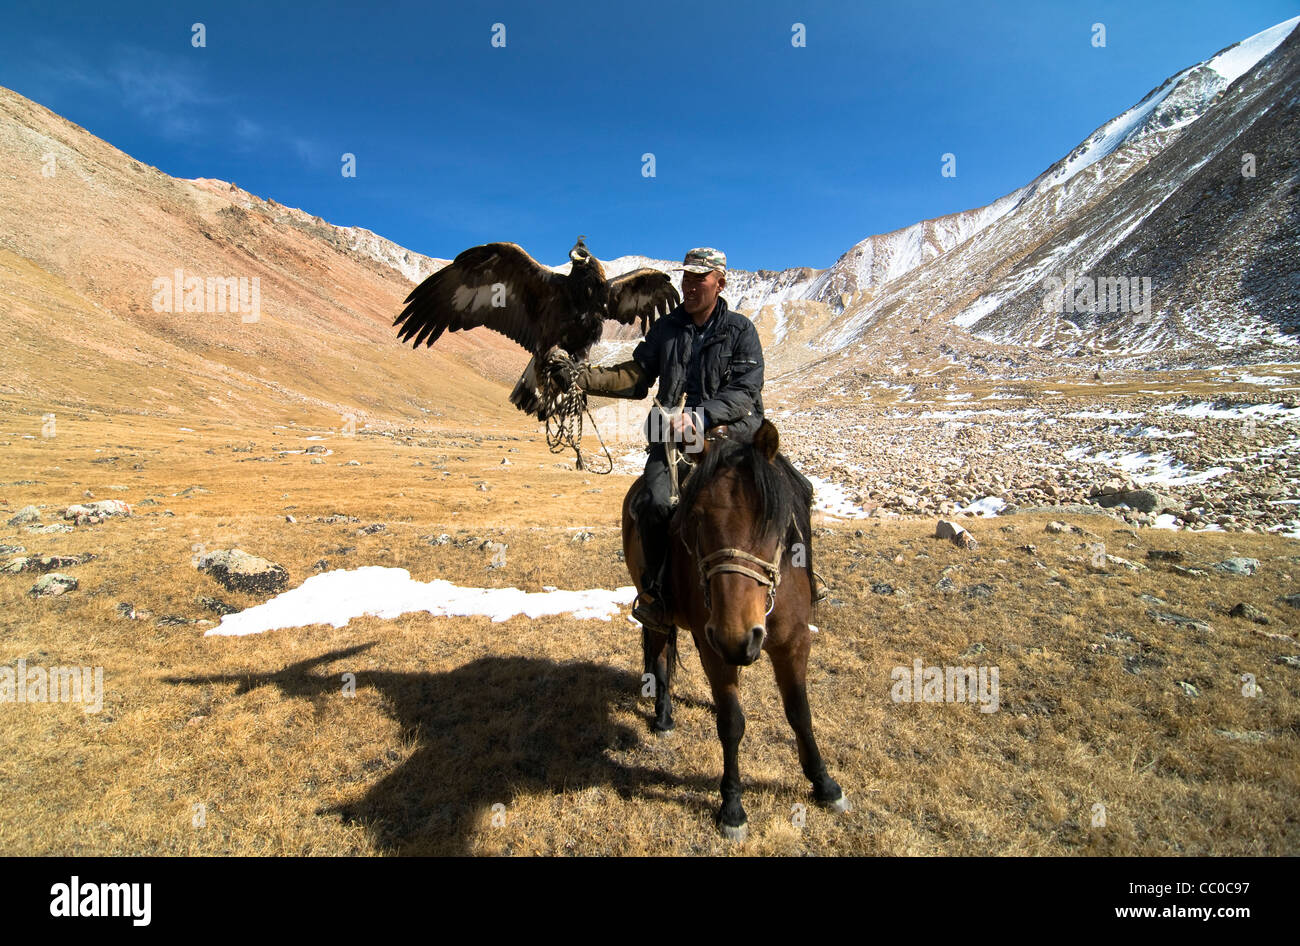 Un chasseur avec son aigle aigle dans la région de l'Altaï de Mongolie occidentale. Banque D'Images